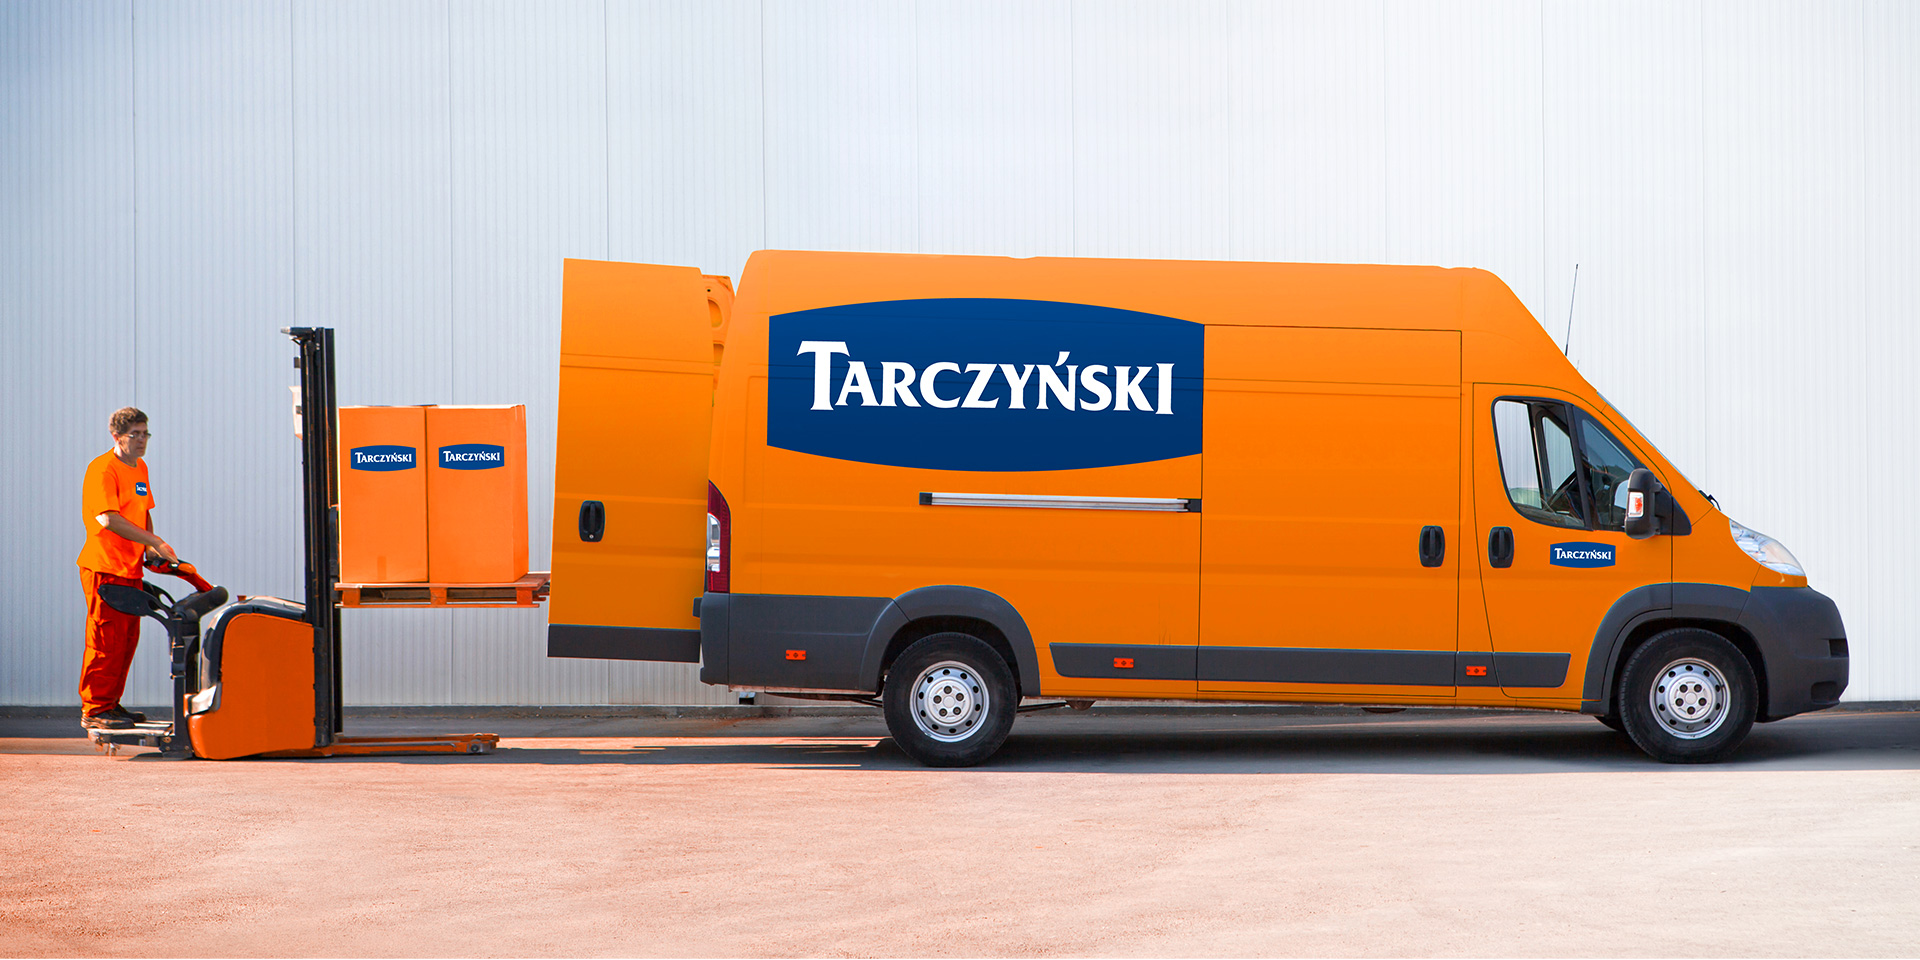 system identyfikacji wizualnej Tarczyński na samochodzie, Corporate identity.